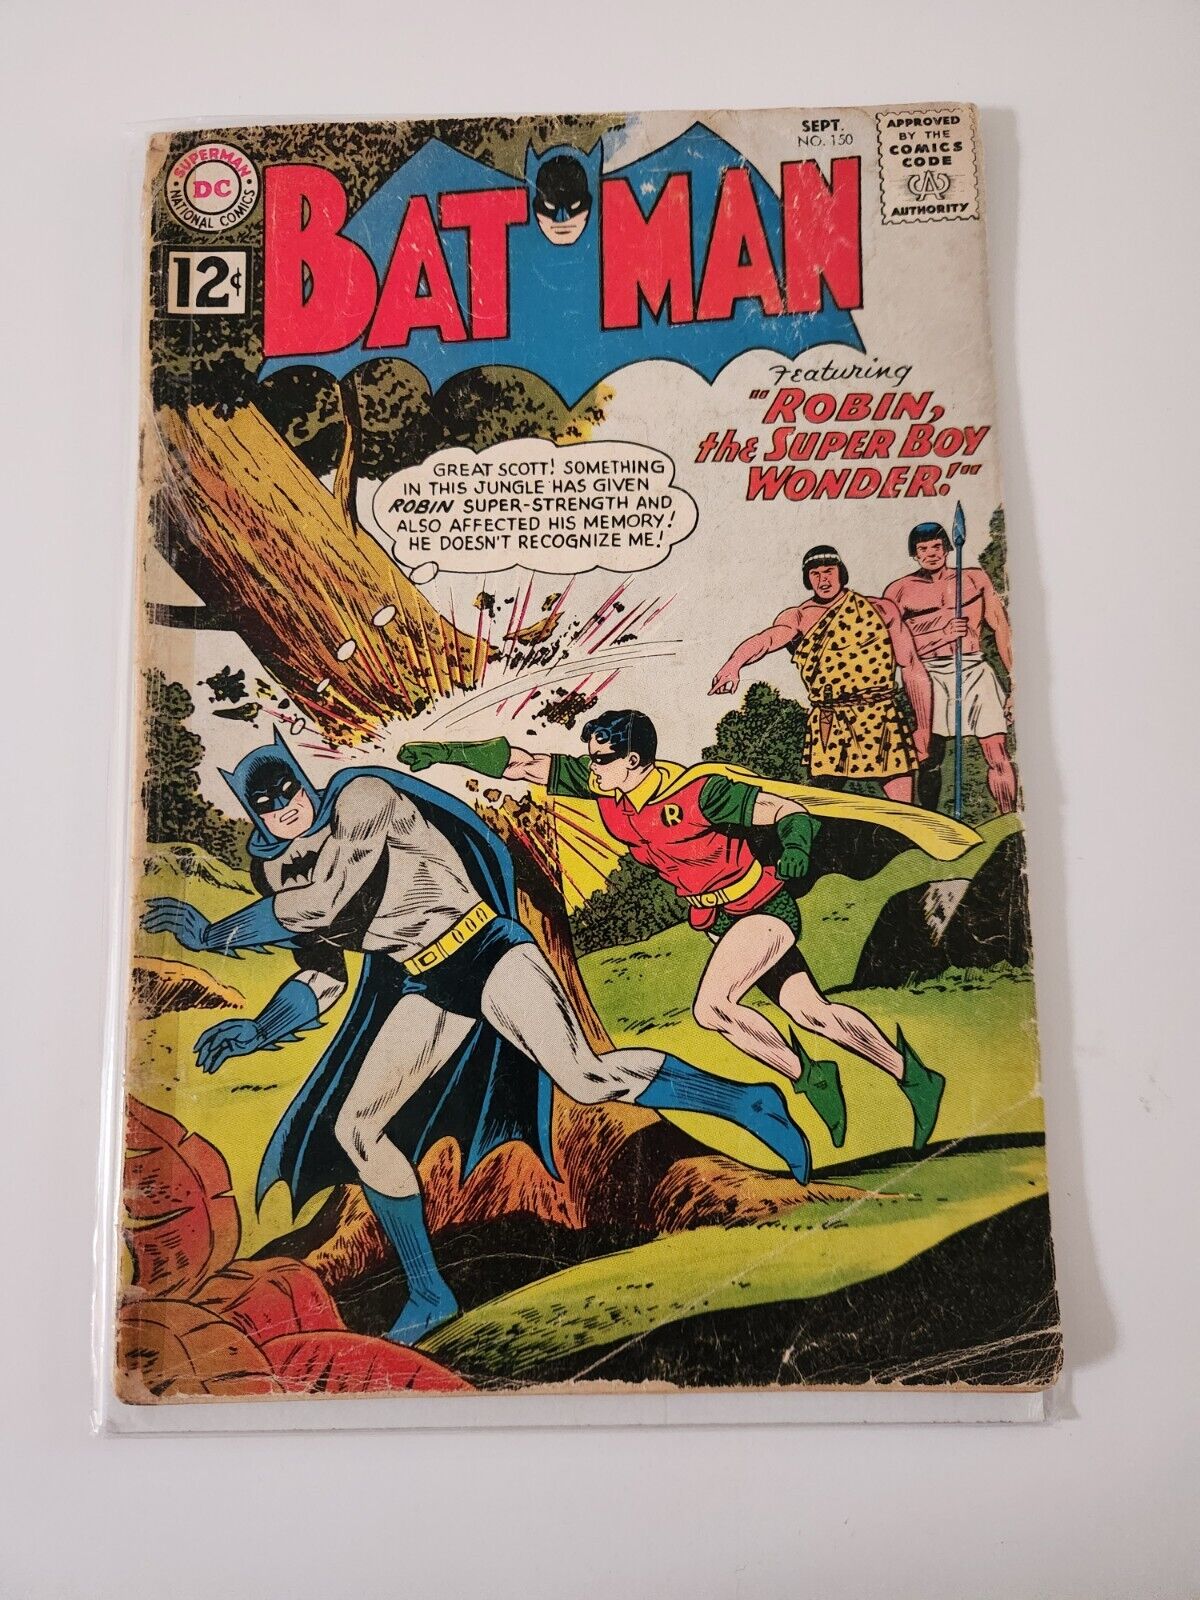 Poor Condition BATMAN COMICS #150 SEPT 1962 BATMAN ROBIN Vintage Rare 